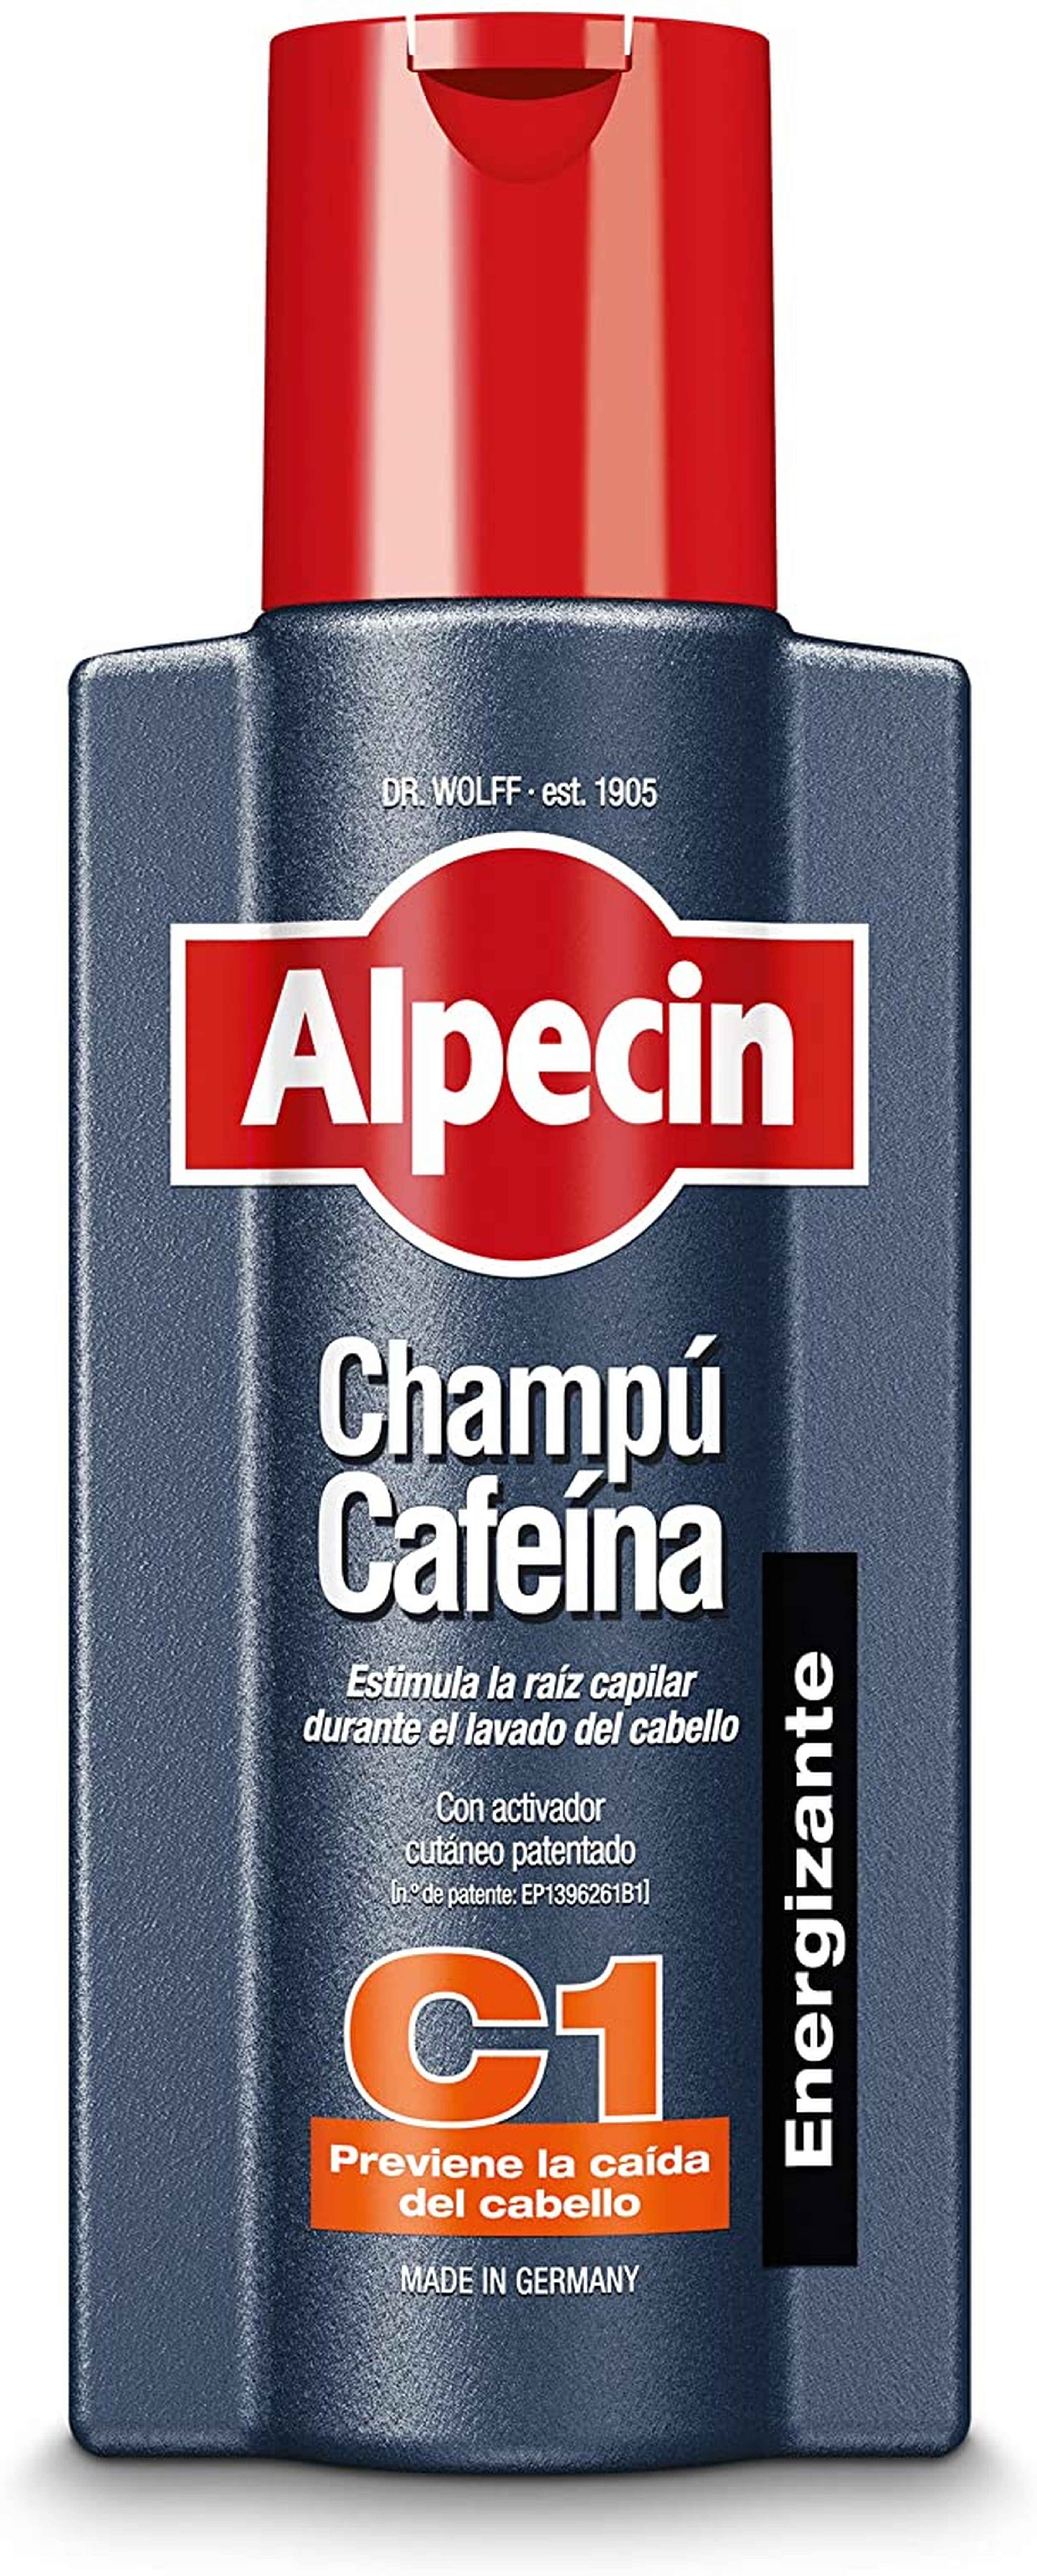 Champú Alpecin Cafeina